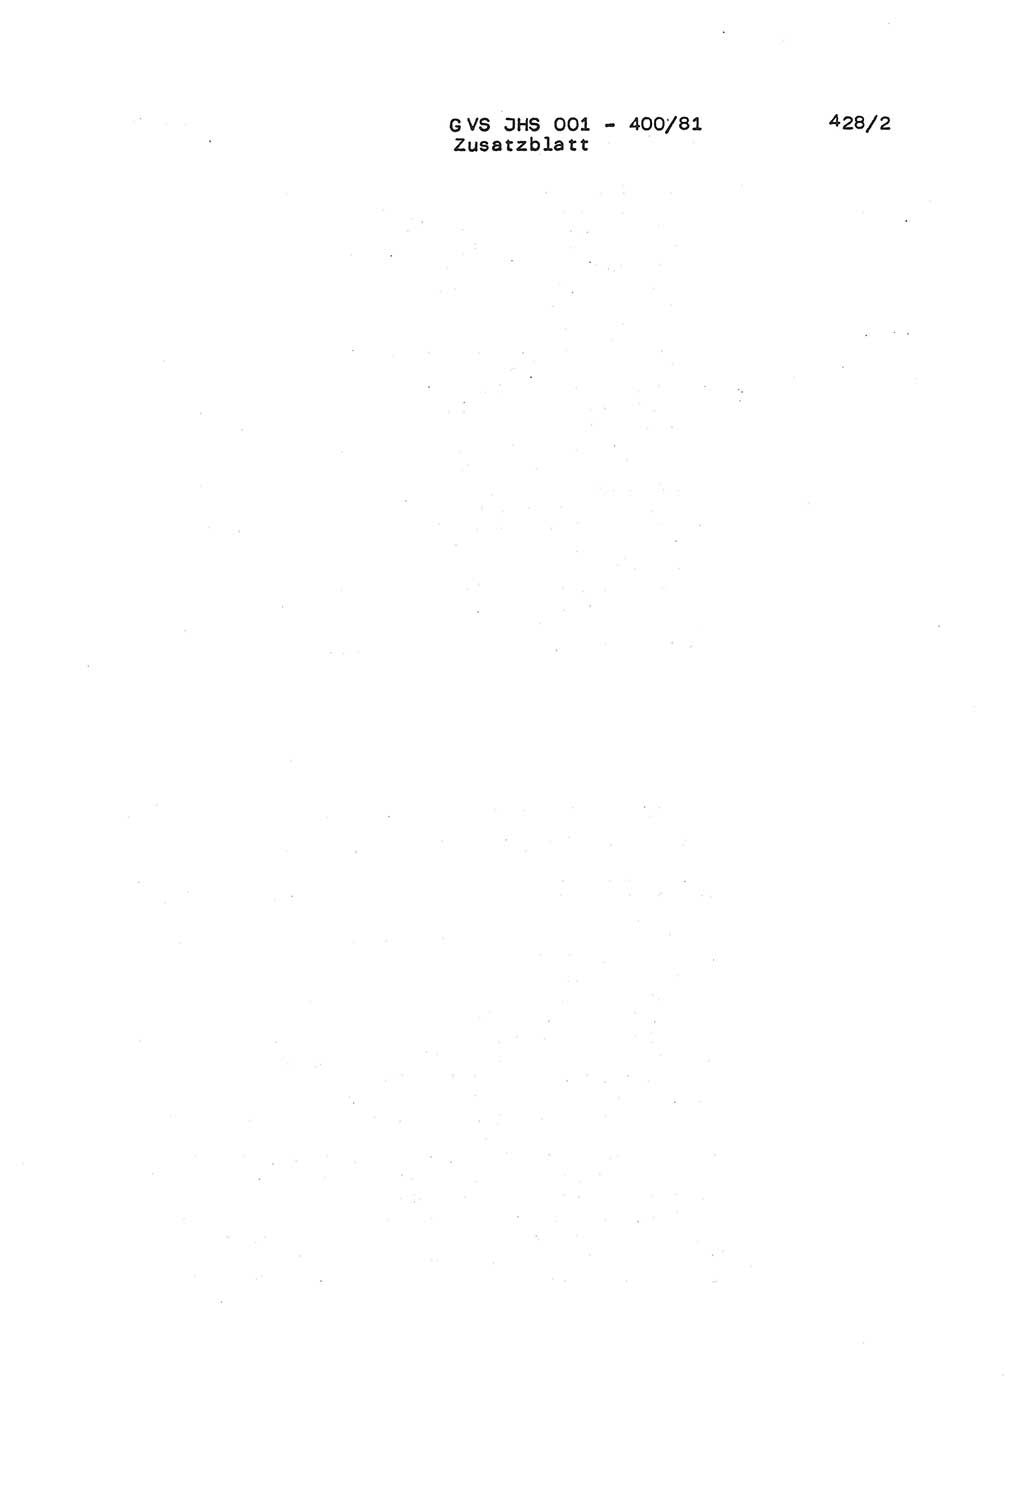 Wörterbuch der politisch-operativen Arbeit, Ministerium für Staatssicherheit (MfS) [Deutsche Demokratische Republik (DDR)], Juristische Hochschule (JHS), Geheime Verschlußsache (GVS) o001-400/81, Potsdam 1985, Blatt 428/2 (Wb. pol.-op. Arb. MfS DDR JHS GVS o001-400/81 1985, Bl. 428/2)